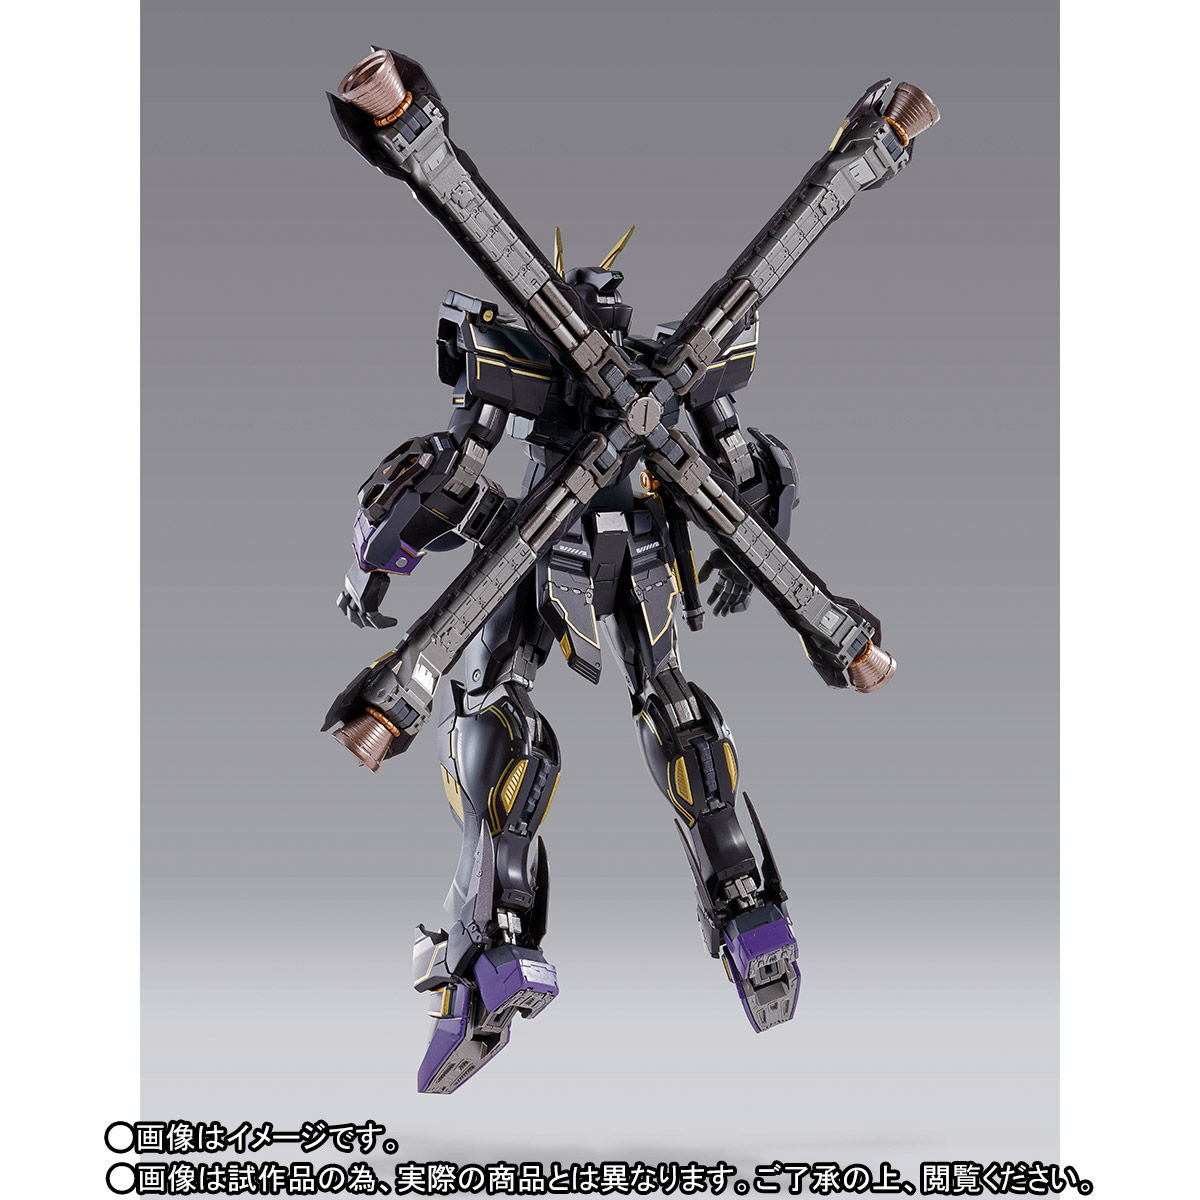 【限定販売】METAL BUILD『クロスボーン・ガンダムX2』機動戦士クロスボーン・ガンダム 可動フィギュア-009